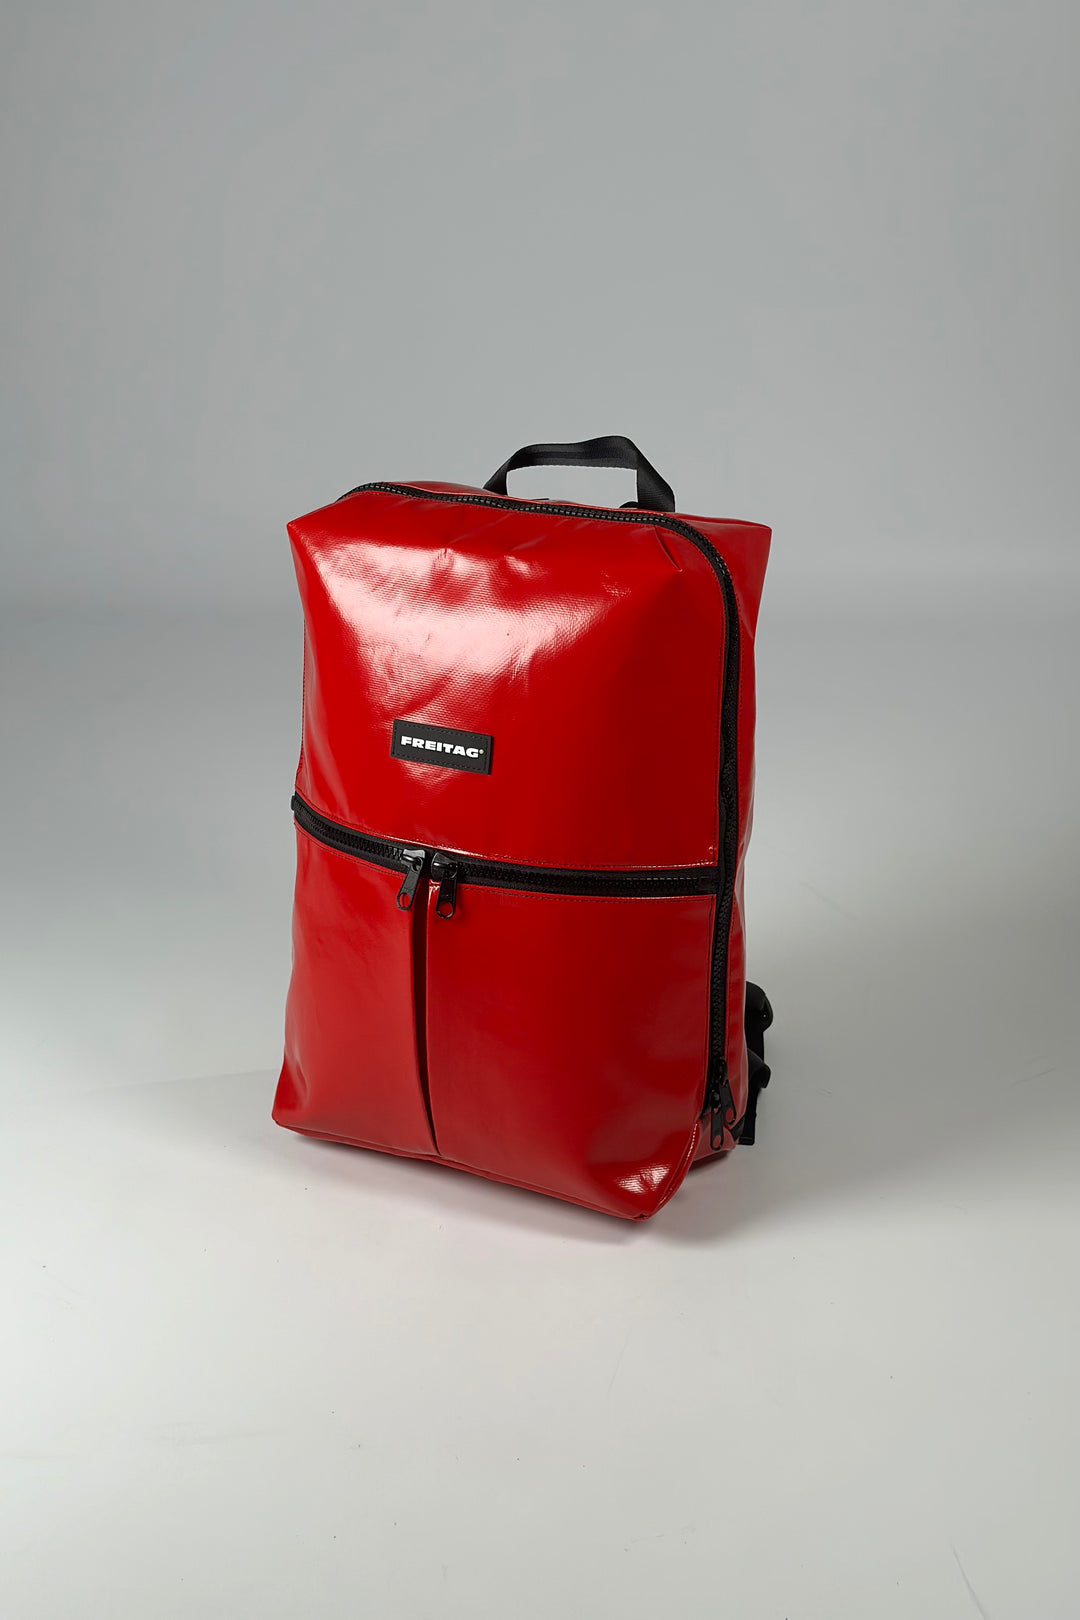 FRINGE F49 Backpack medium